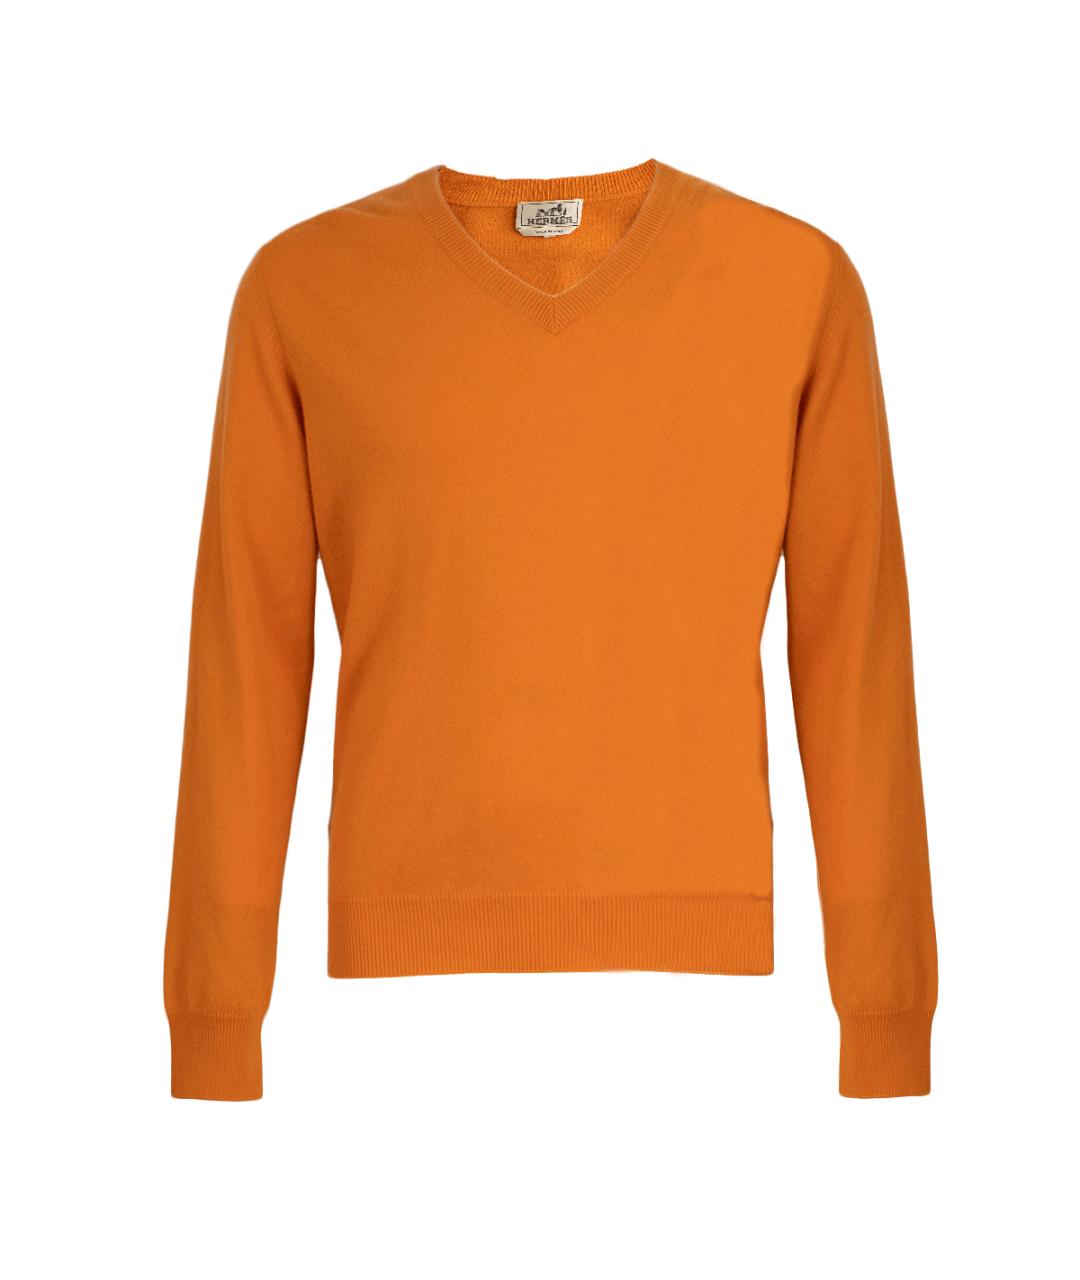 HERMES PRE-OWNED Оранжевый кашемировый джемпер / свитер, фото 1